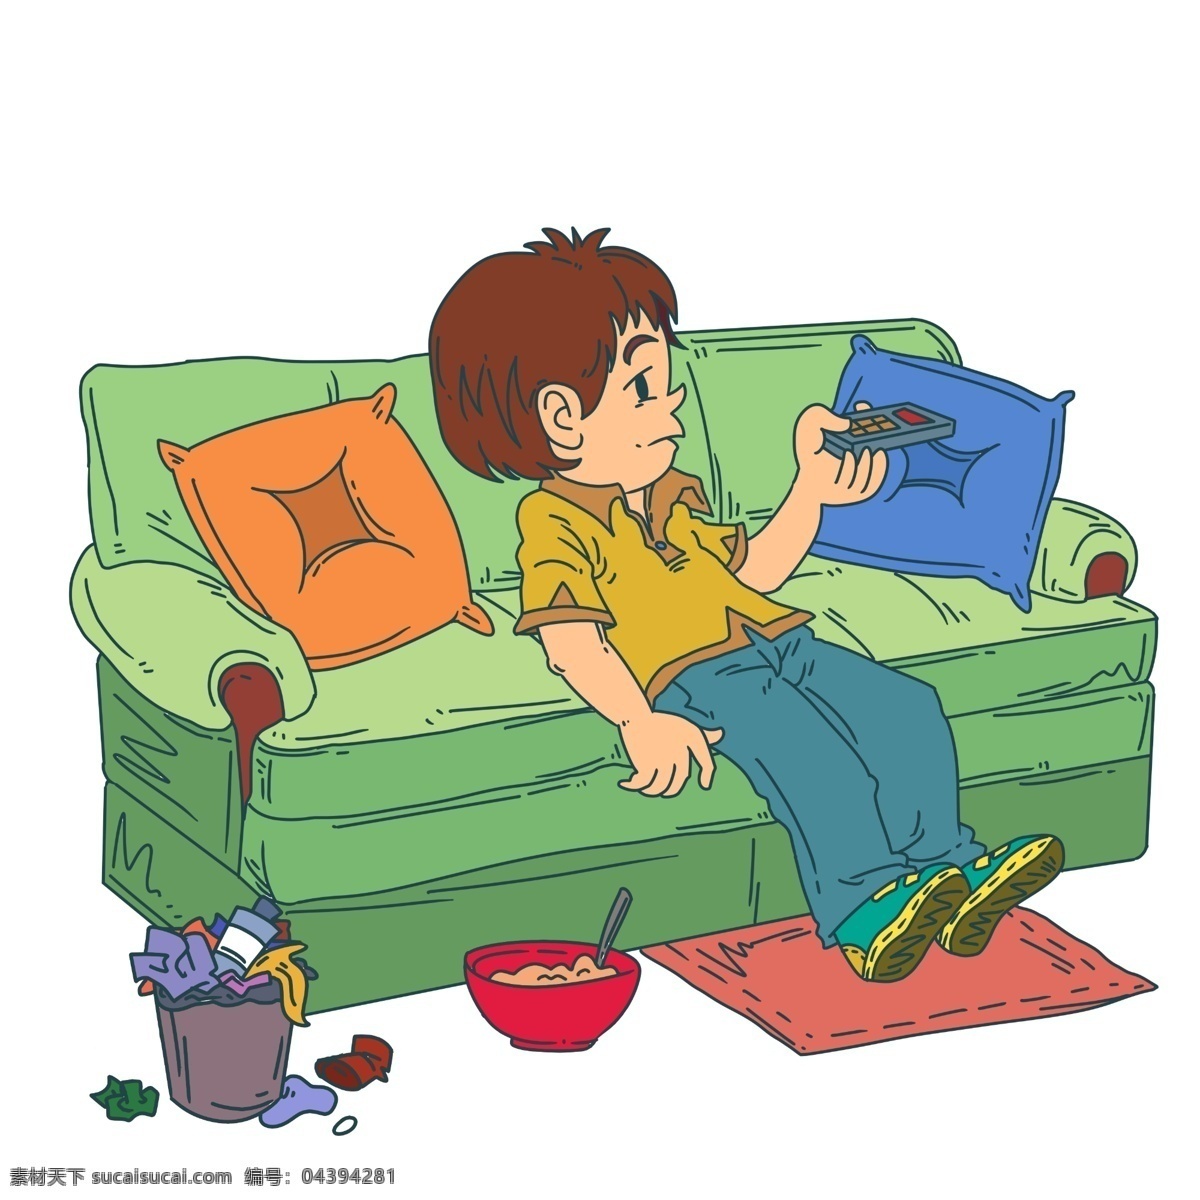 宅 在家 看 电视 男孩 红色的碗 绿色的沙发 家具沙发 男 人物 手绘 插画 黄色的靠背 咖色的垃圾桶